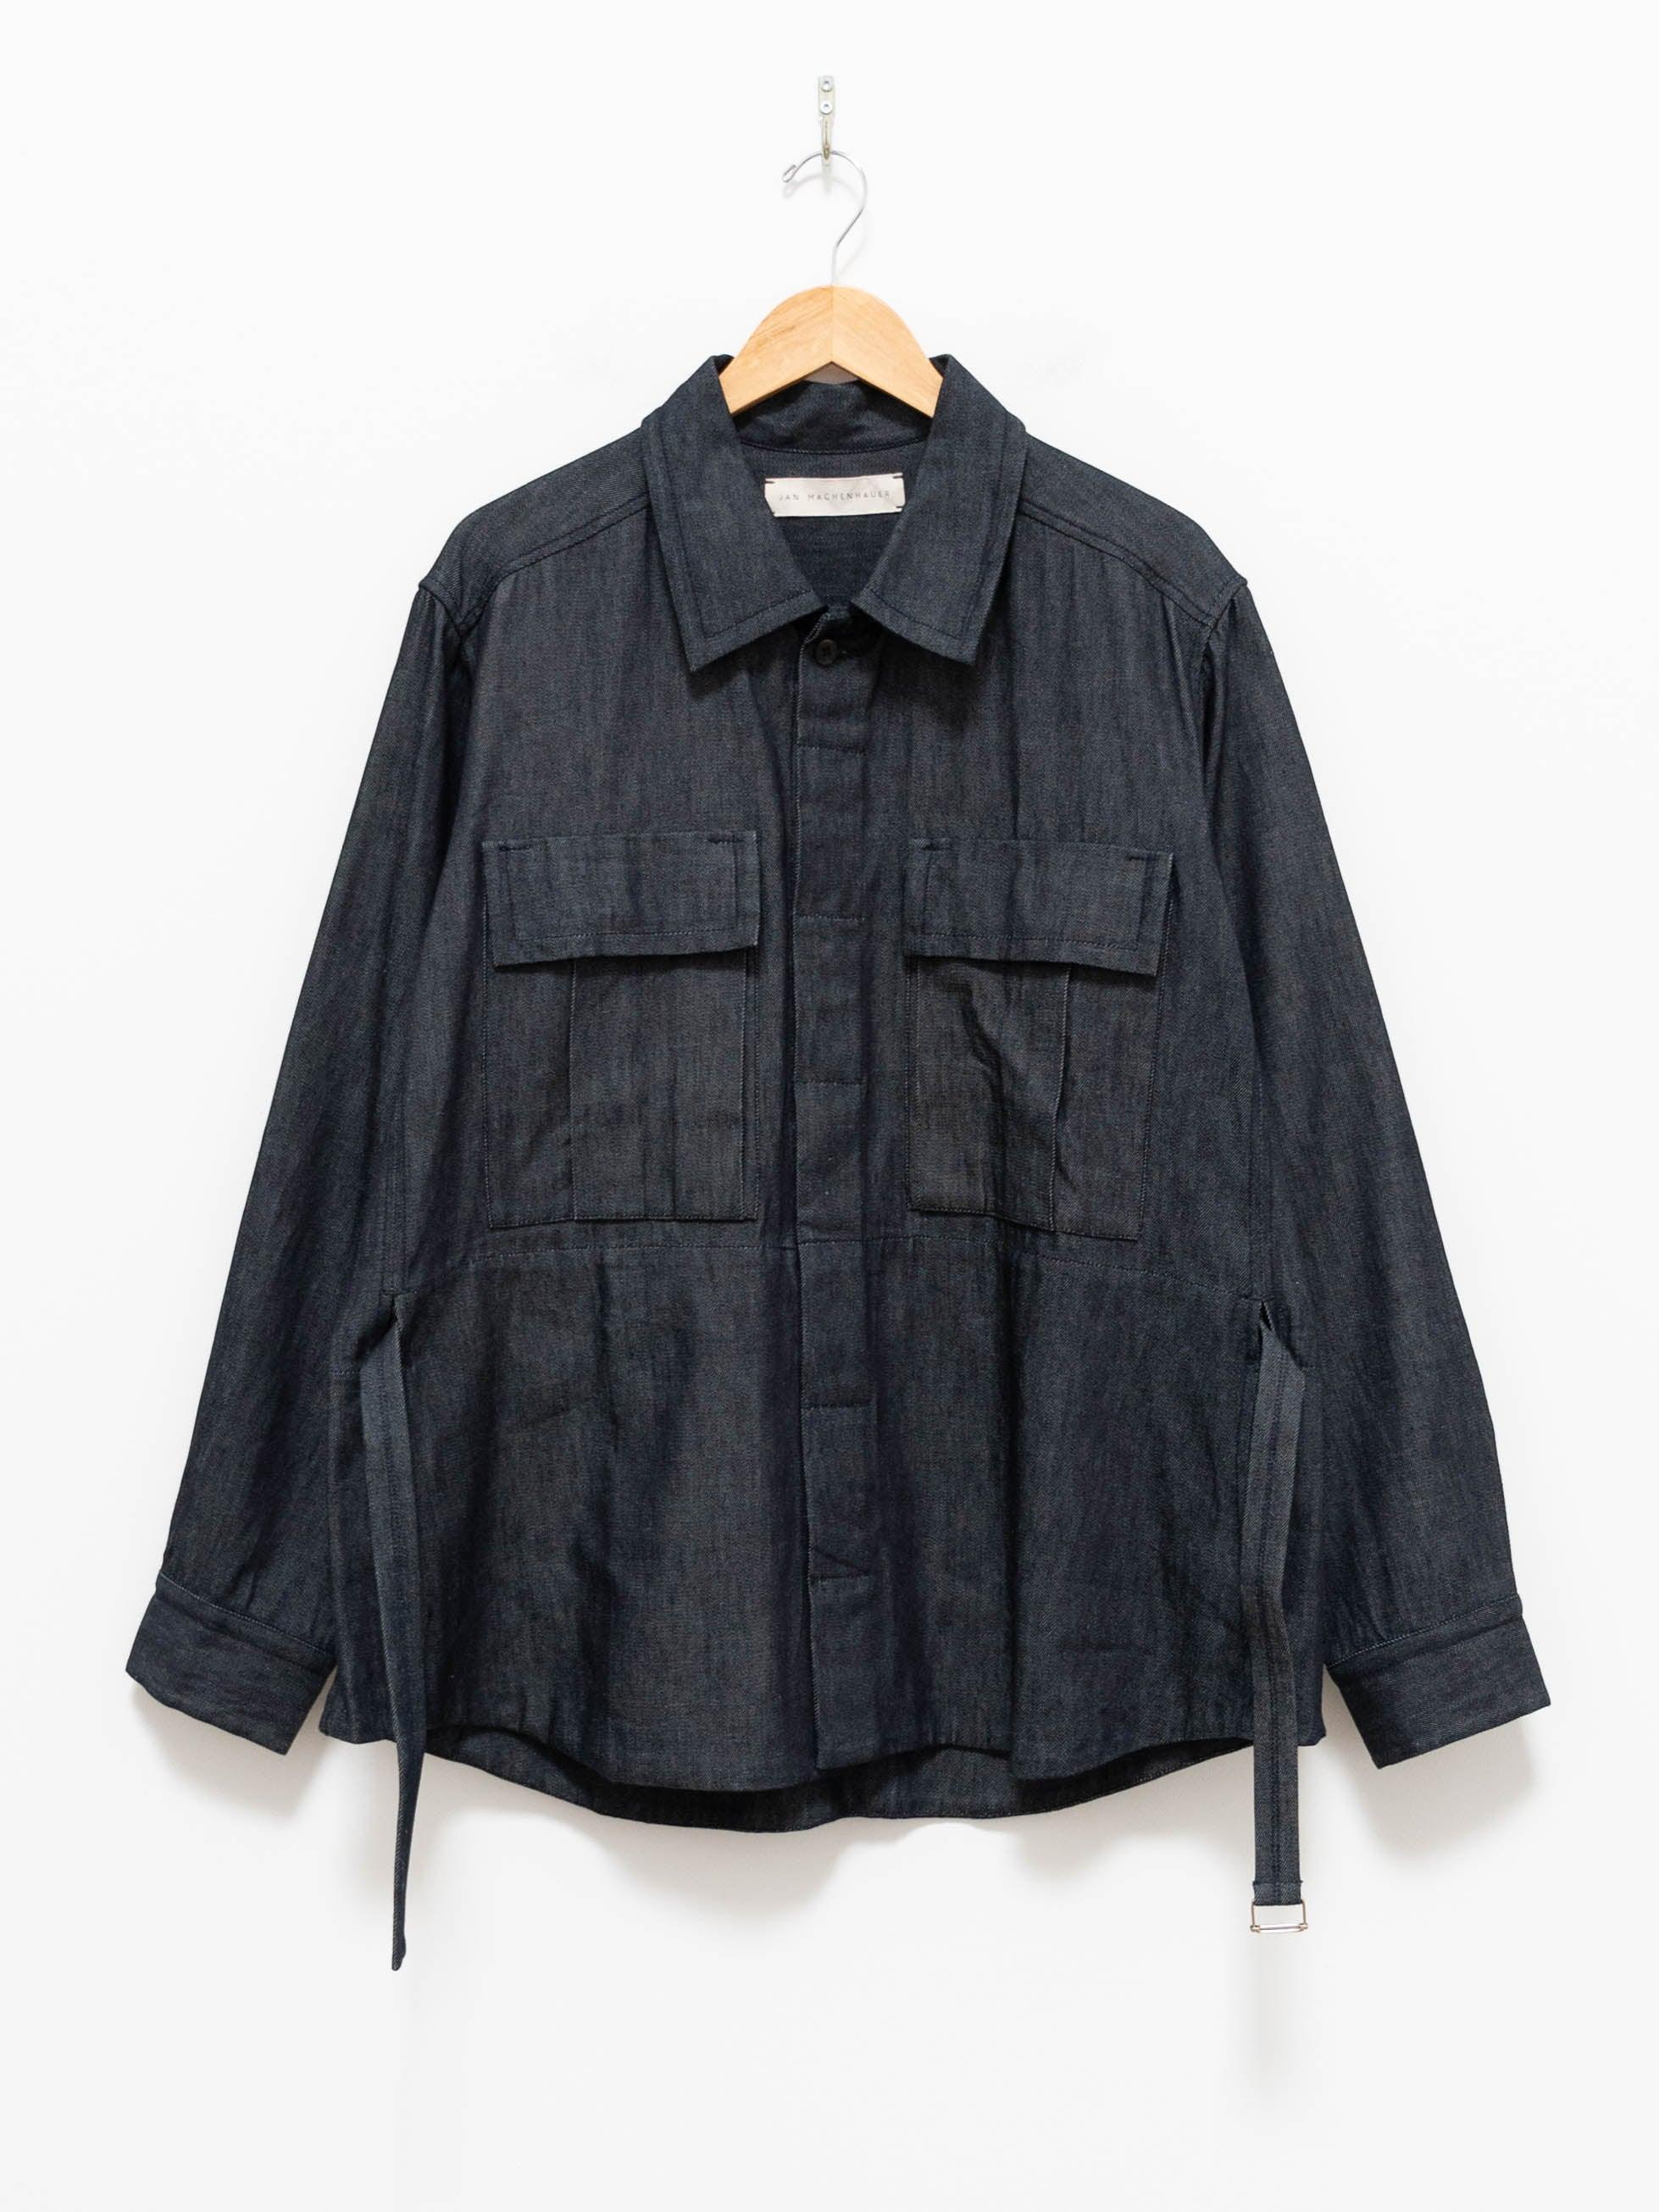 Namu Shop - Jan Machenhauer Jay Shirt Jacket - Denim Blue